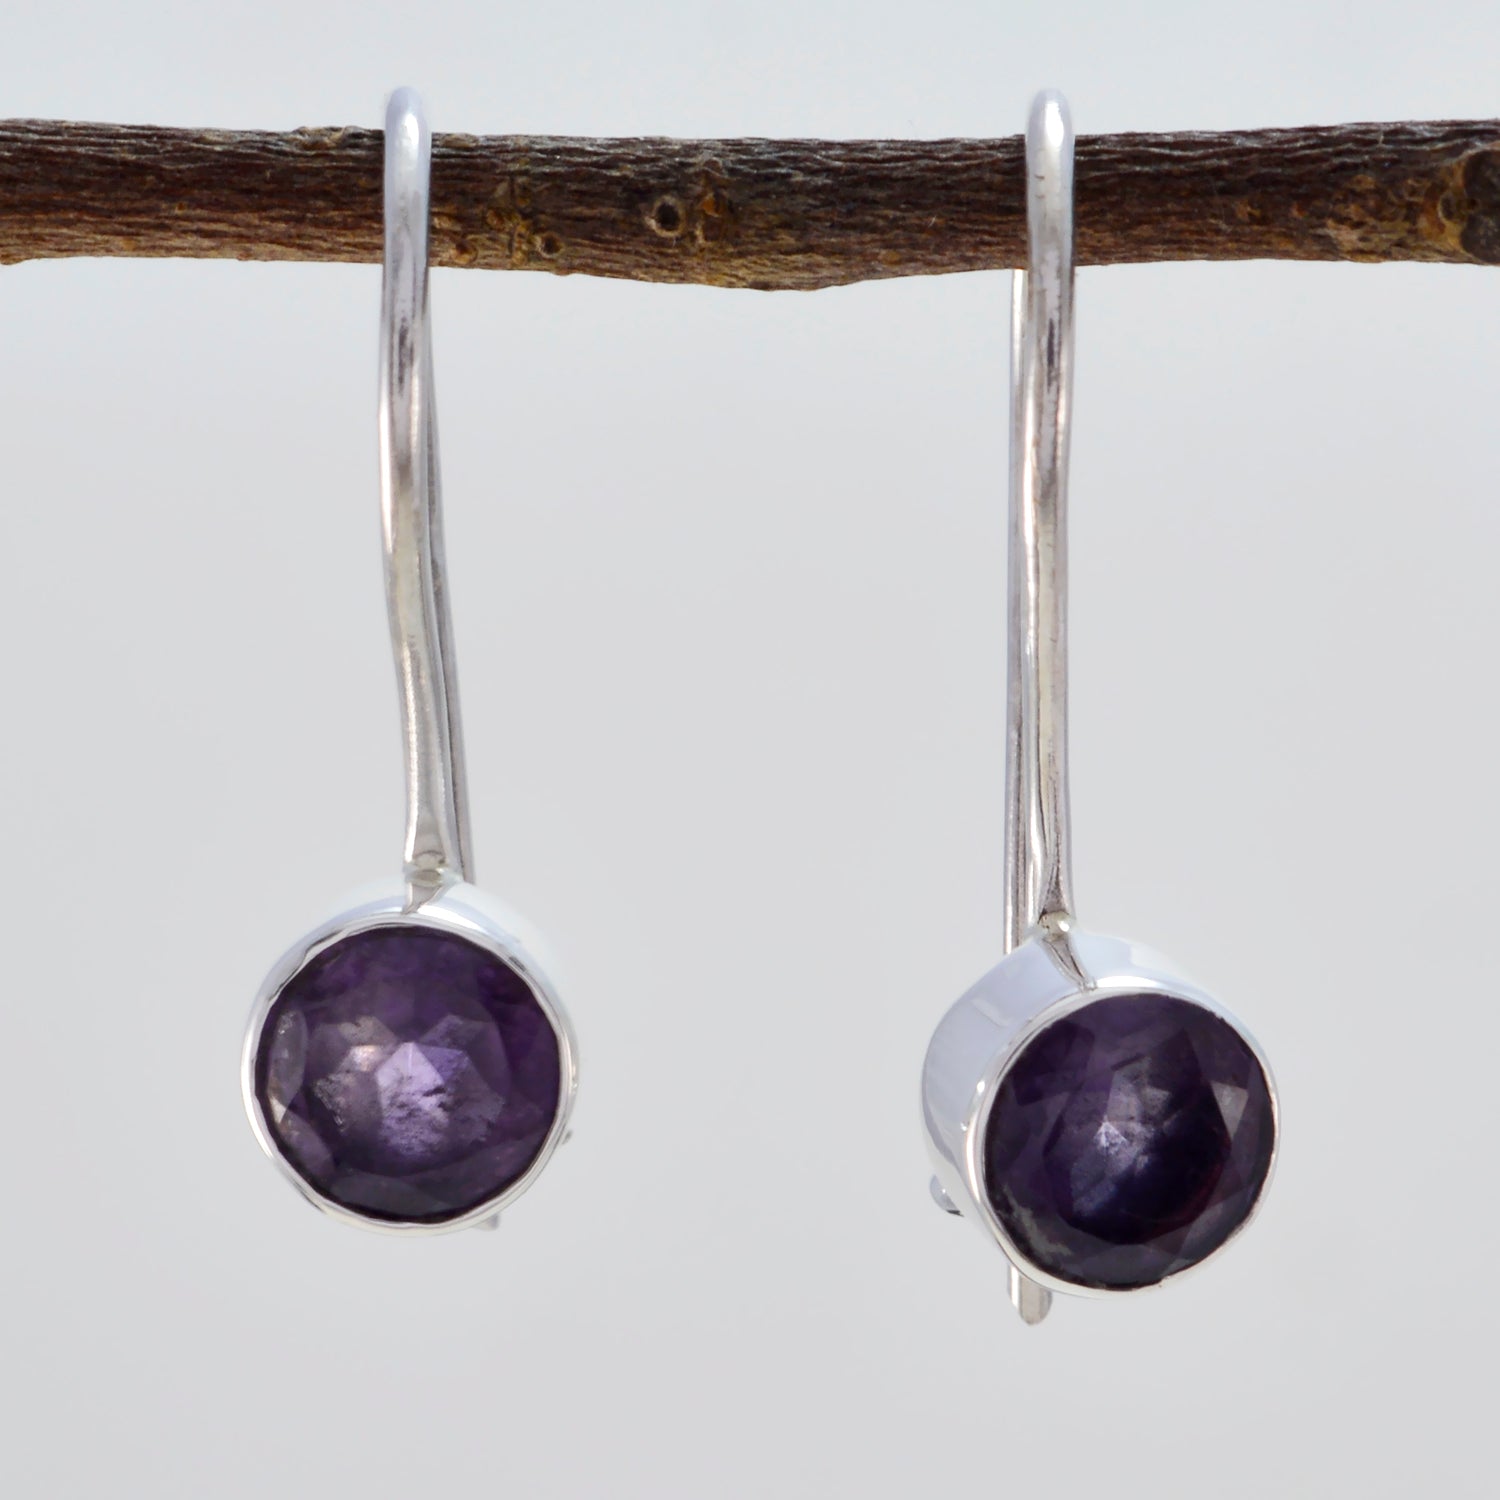 Riyo Good Gemstones round Faceted Purple Amethyst Silver Earrings grandmother gift